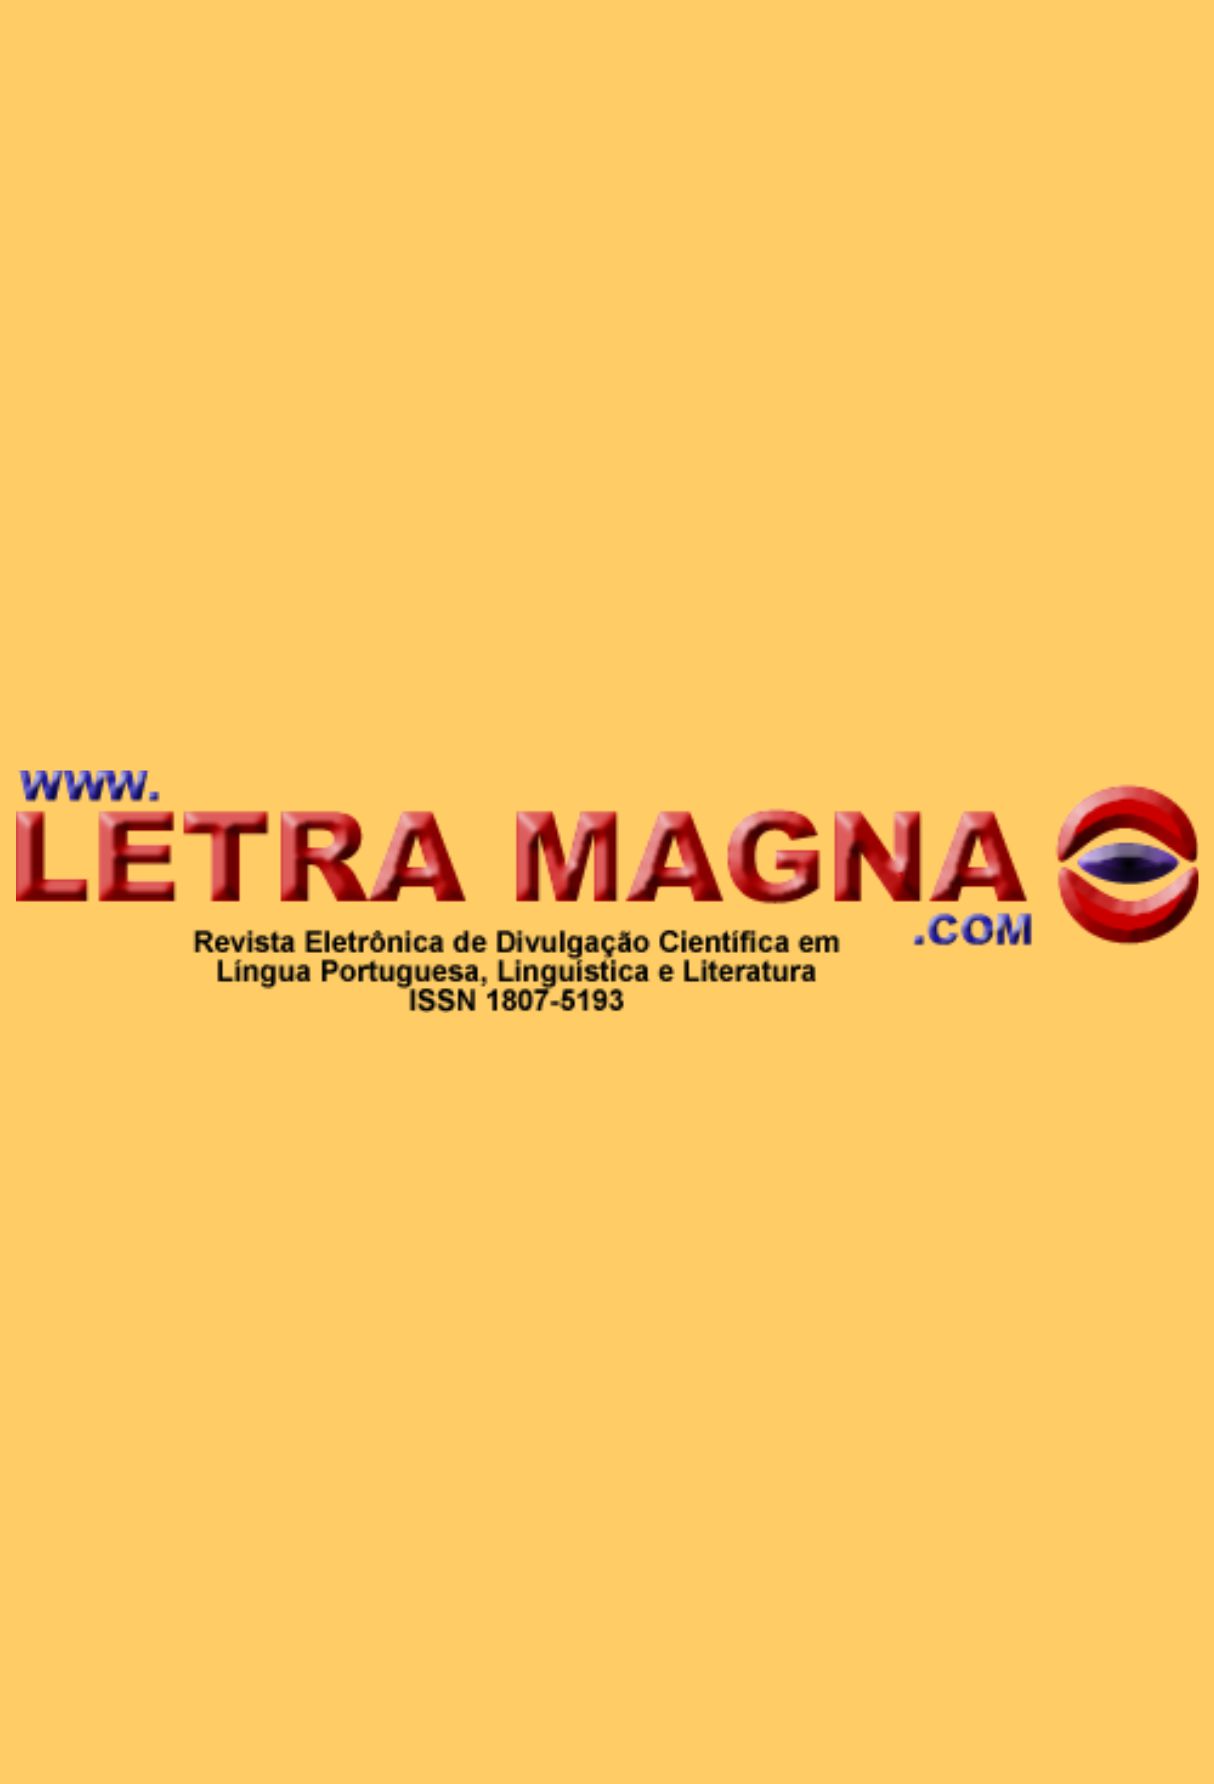 Capa: Revista Letra Magna